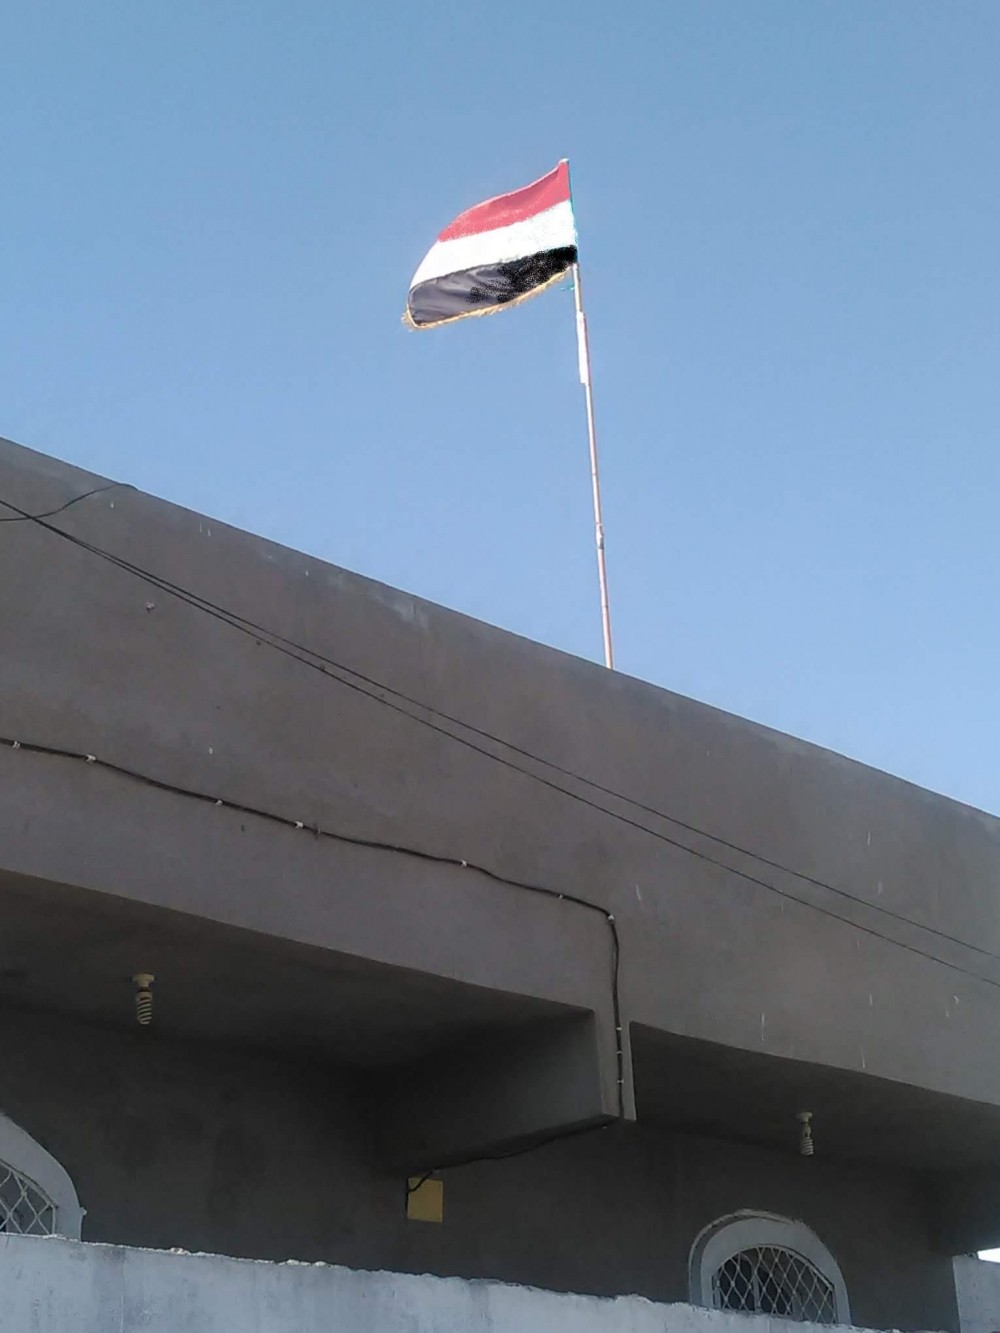 صحافي جنوبي: المزاج العام في عدن يتغير والناس ترفع أعلام الجمهورية اليمنية